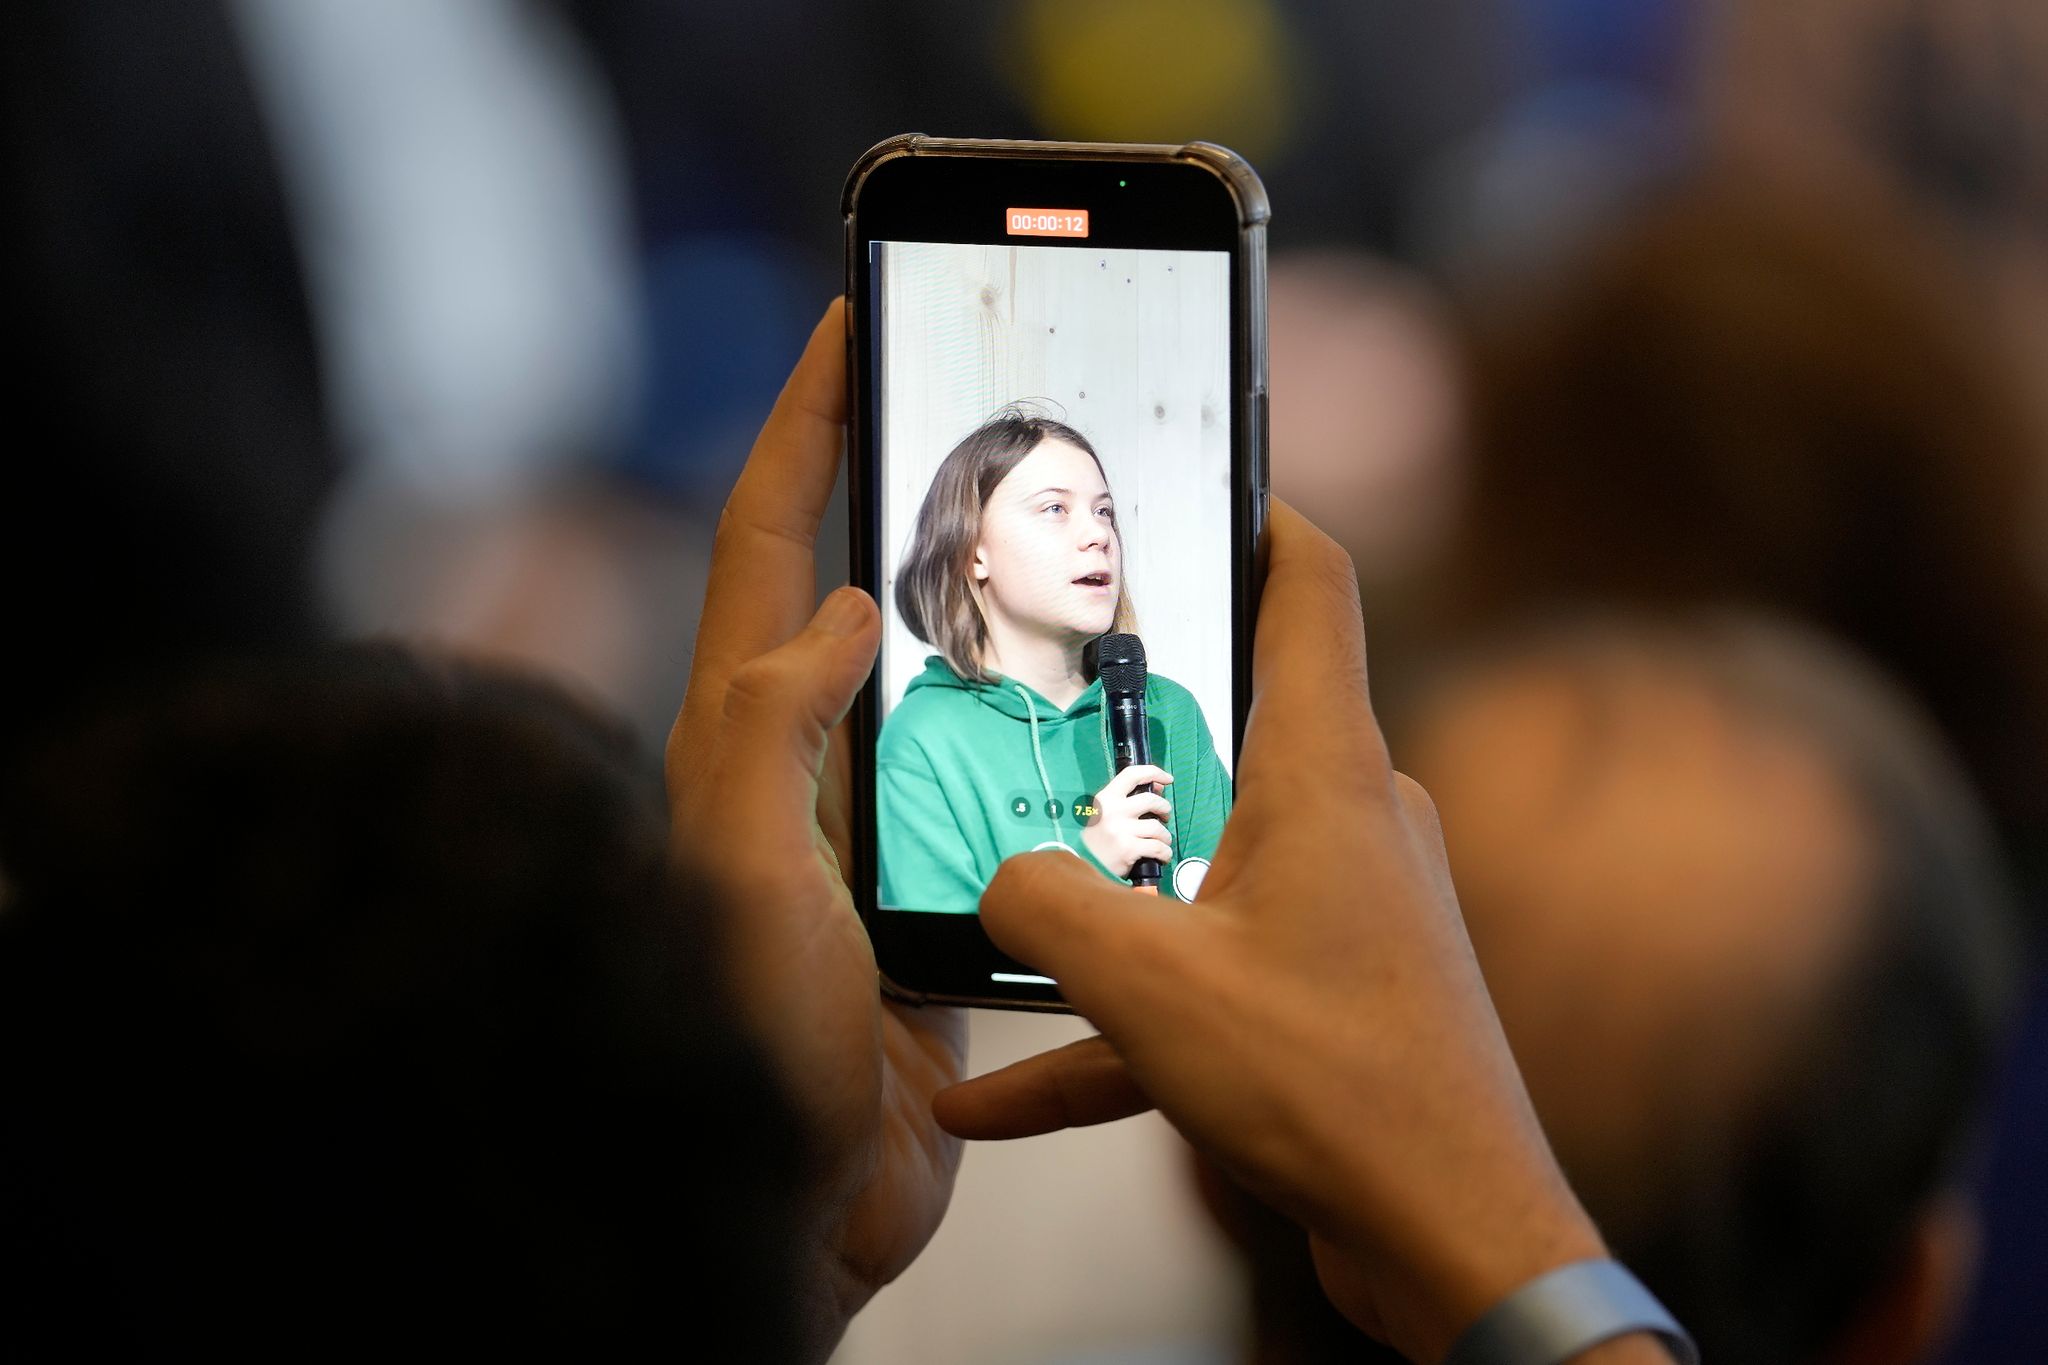 Während einer Pressekonferenz ist Greta Thunberg, Klimaaktivistin aus Schweden, auf dem Display eines Mobiltelefons zu sehen.